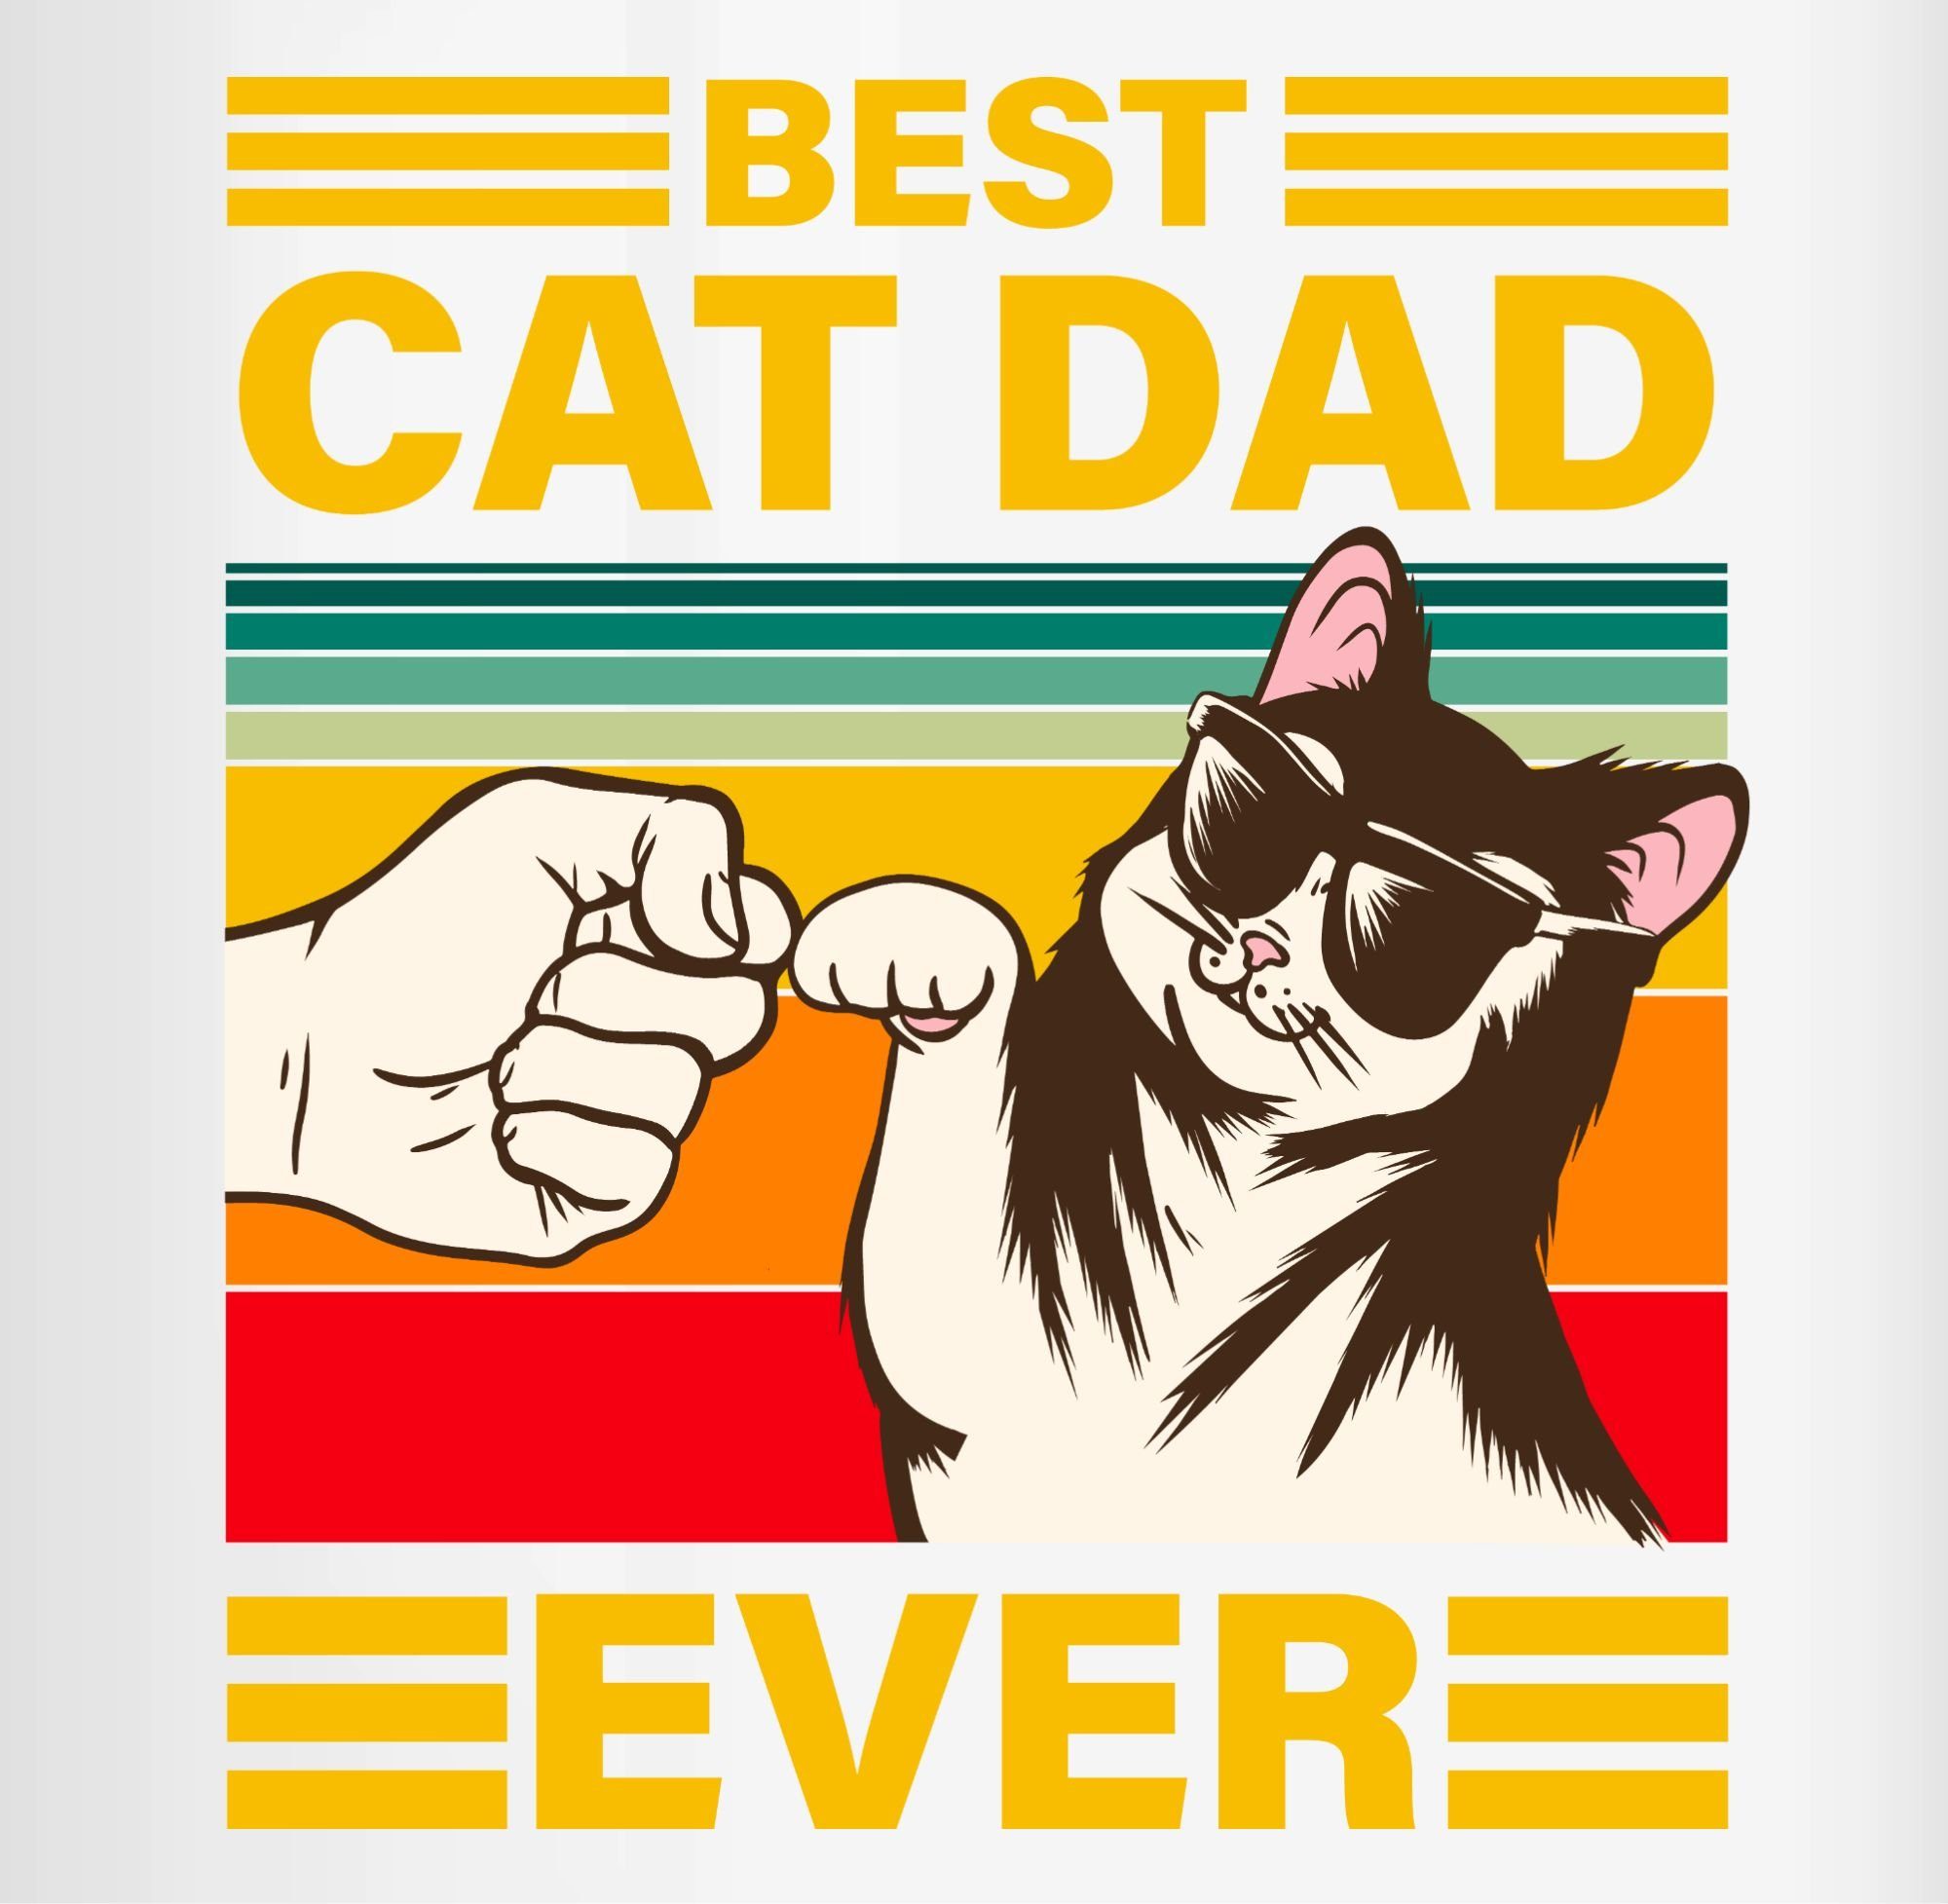 Shirtracer Tasse Best Cat Dad Keramik, Ever, Schwarz 1 Katze Katzen